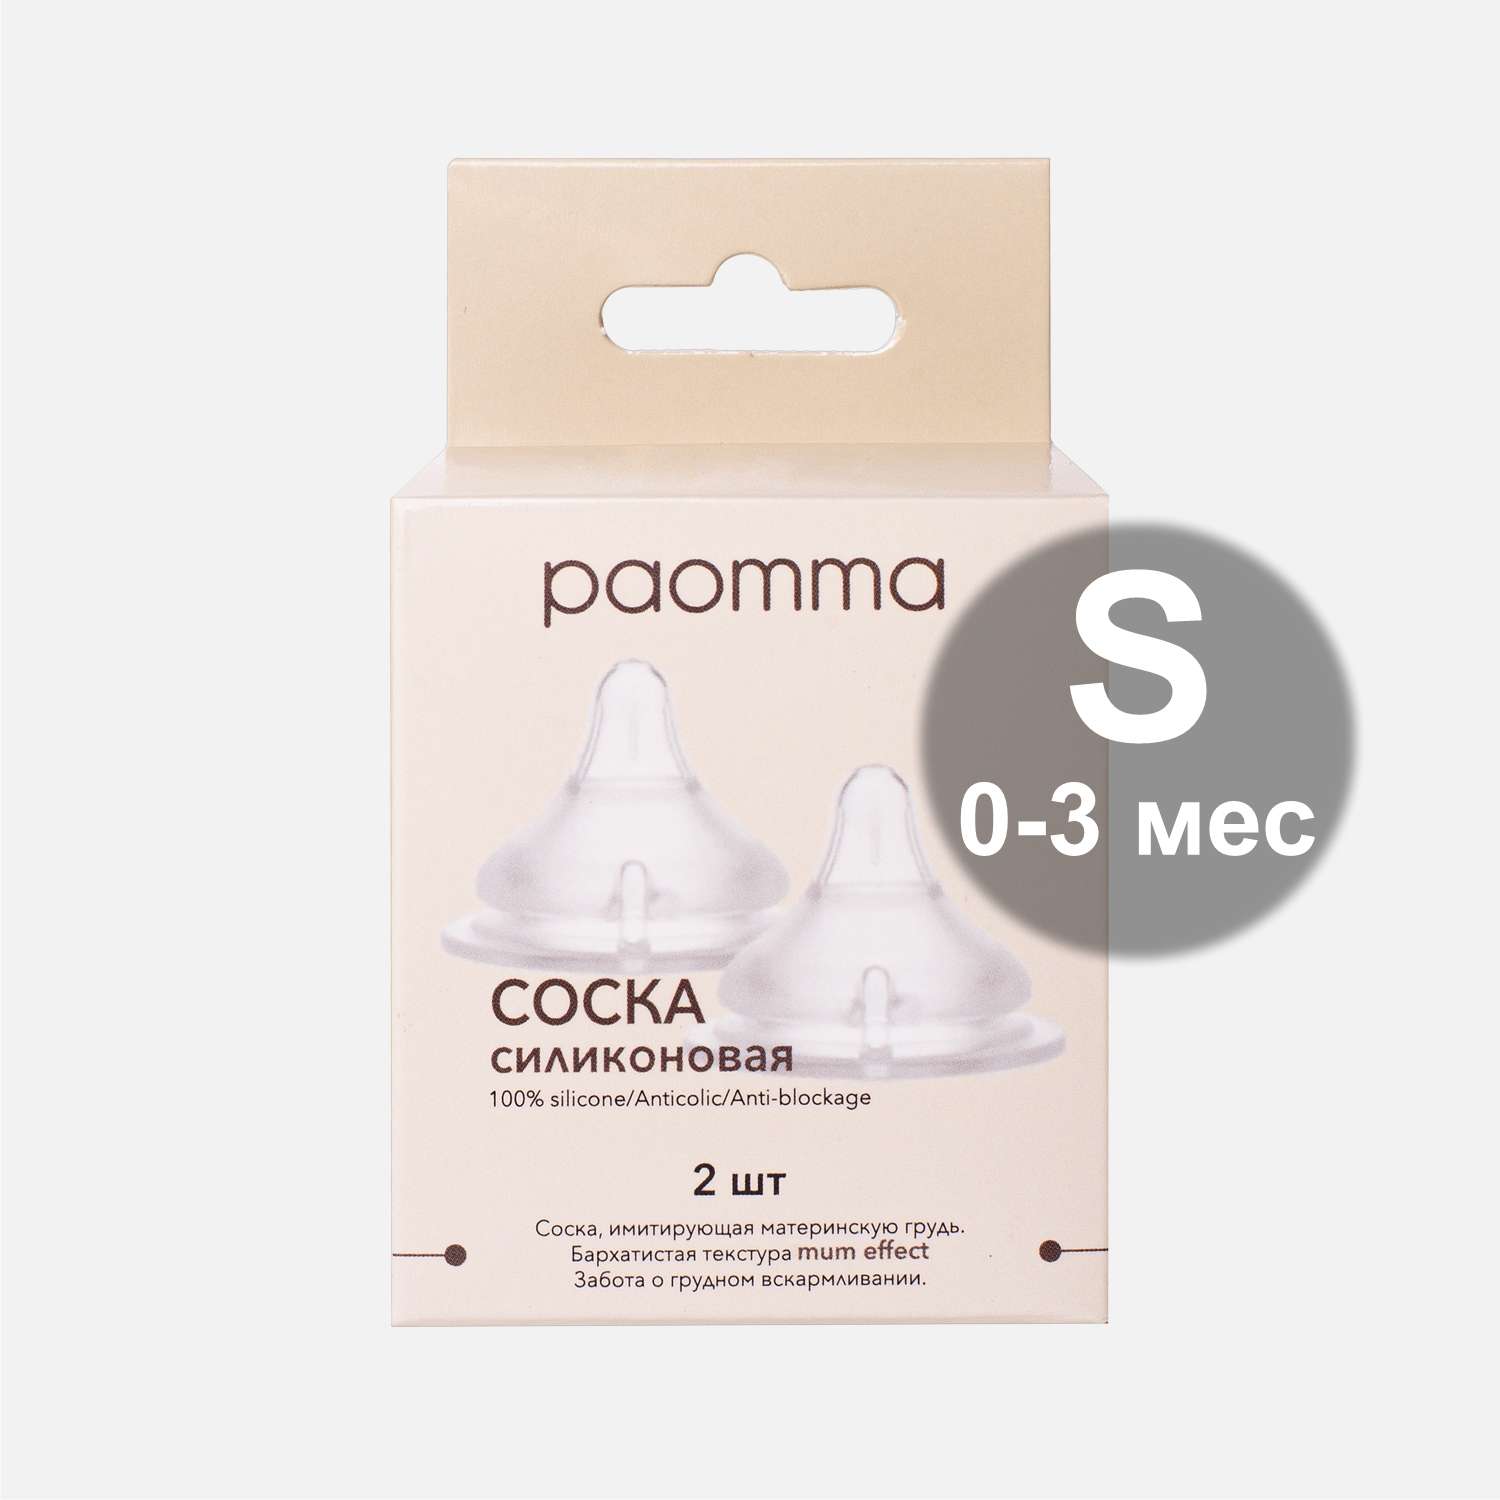 Соска на бутылочку paomma mum effect Anti Colic S 0-3 мес для новорожденных 2 шт - фото 5